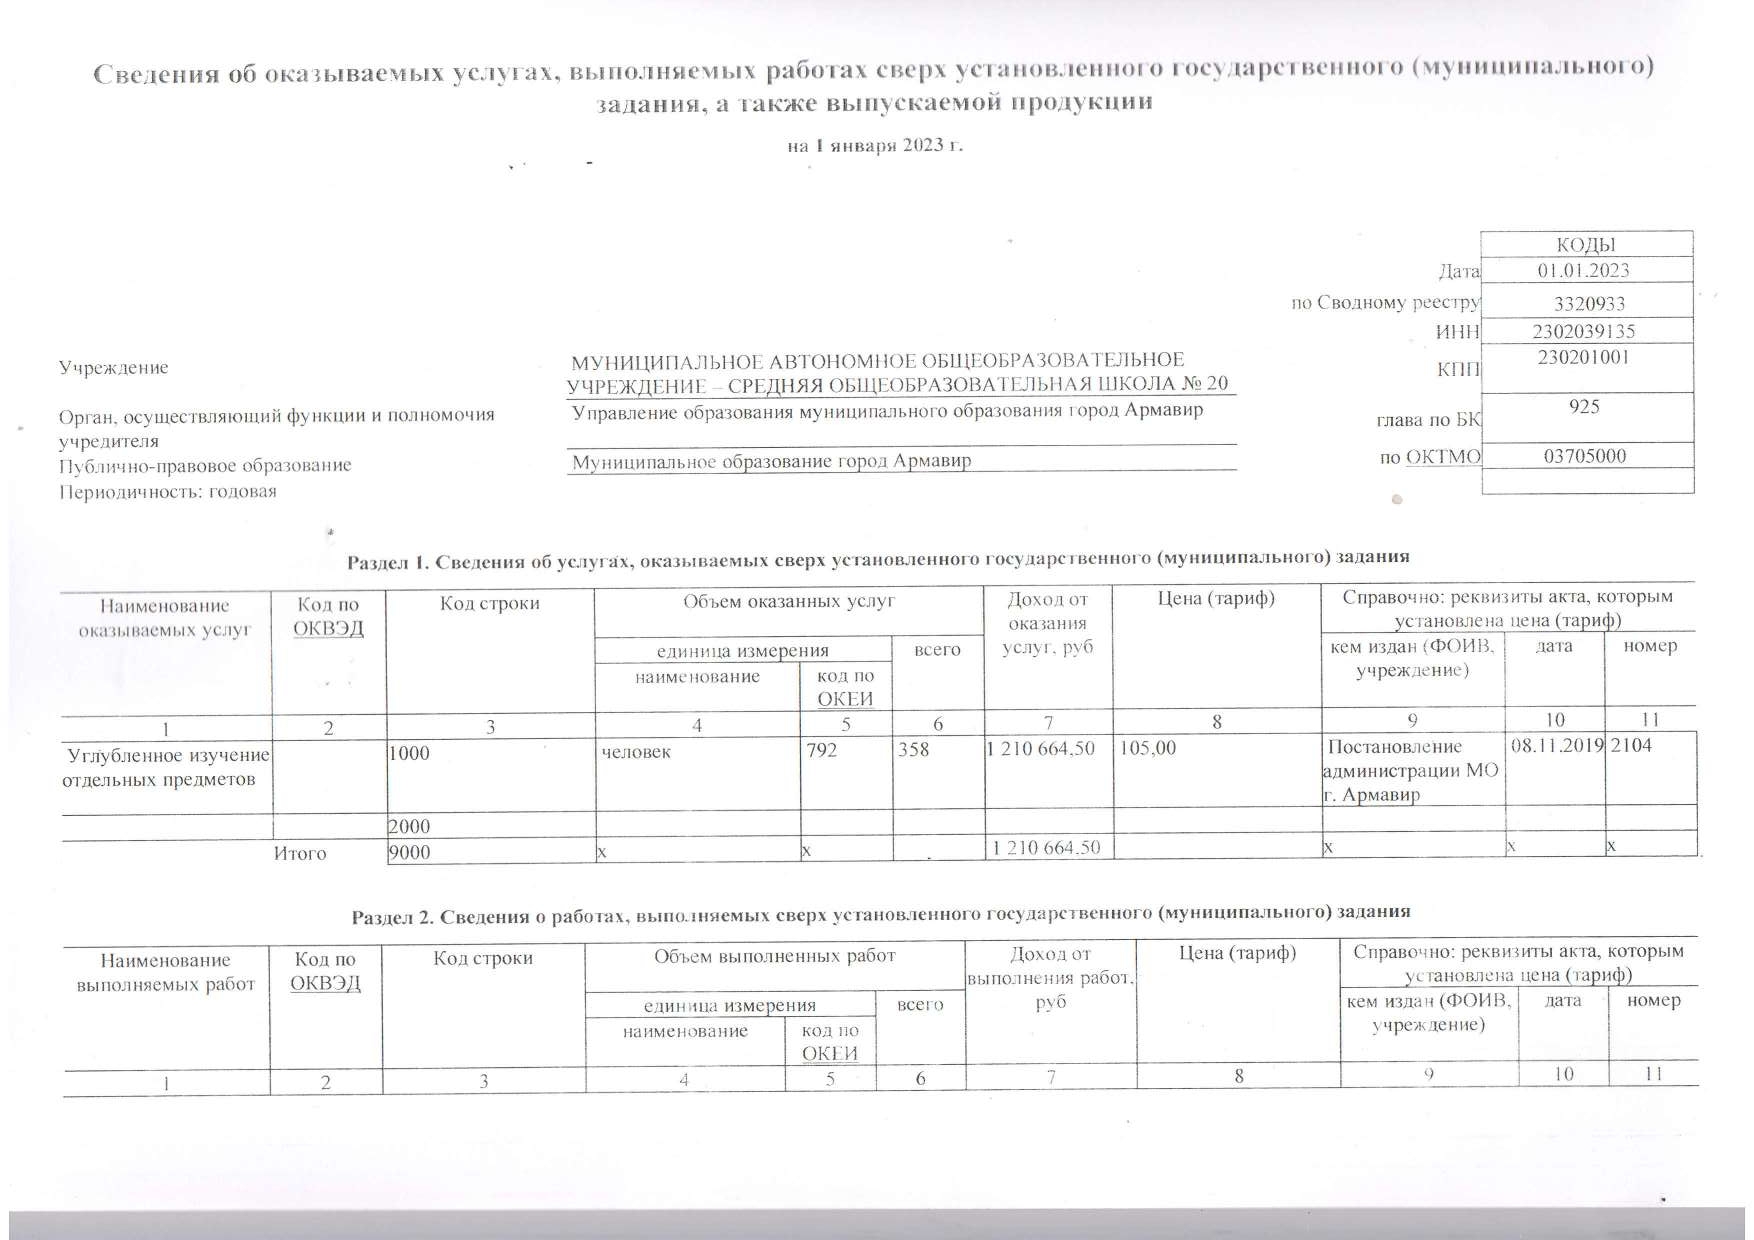 Отчет о результатах деятельности муниципального учреждения на 01.01.2023 г_page-0003.jpg